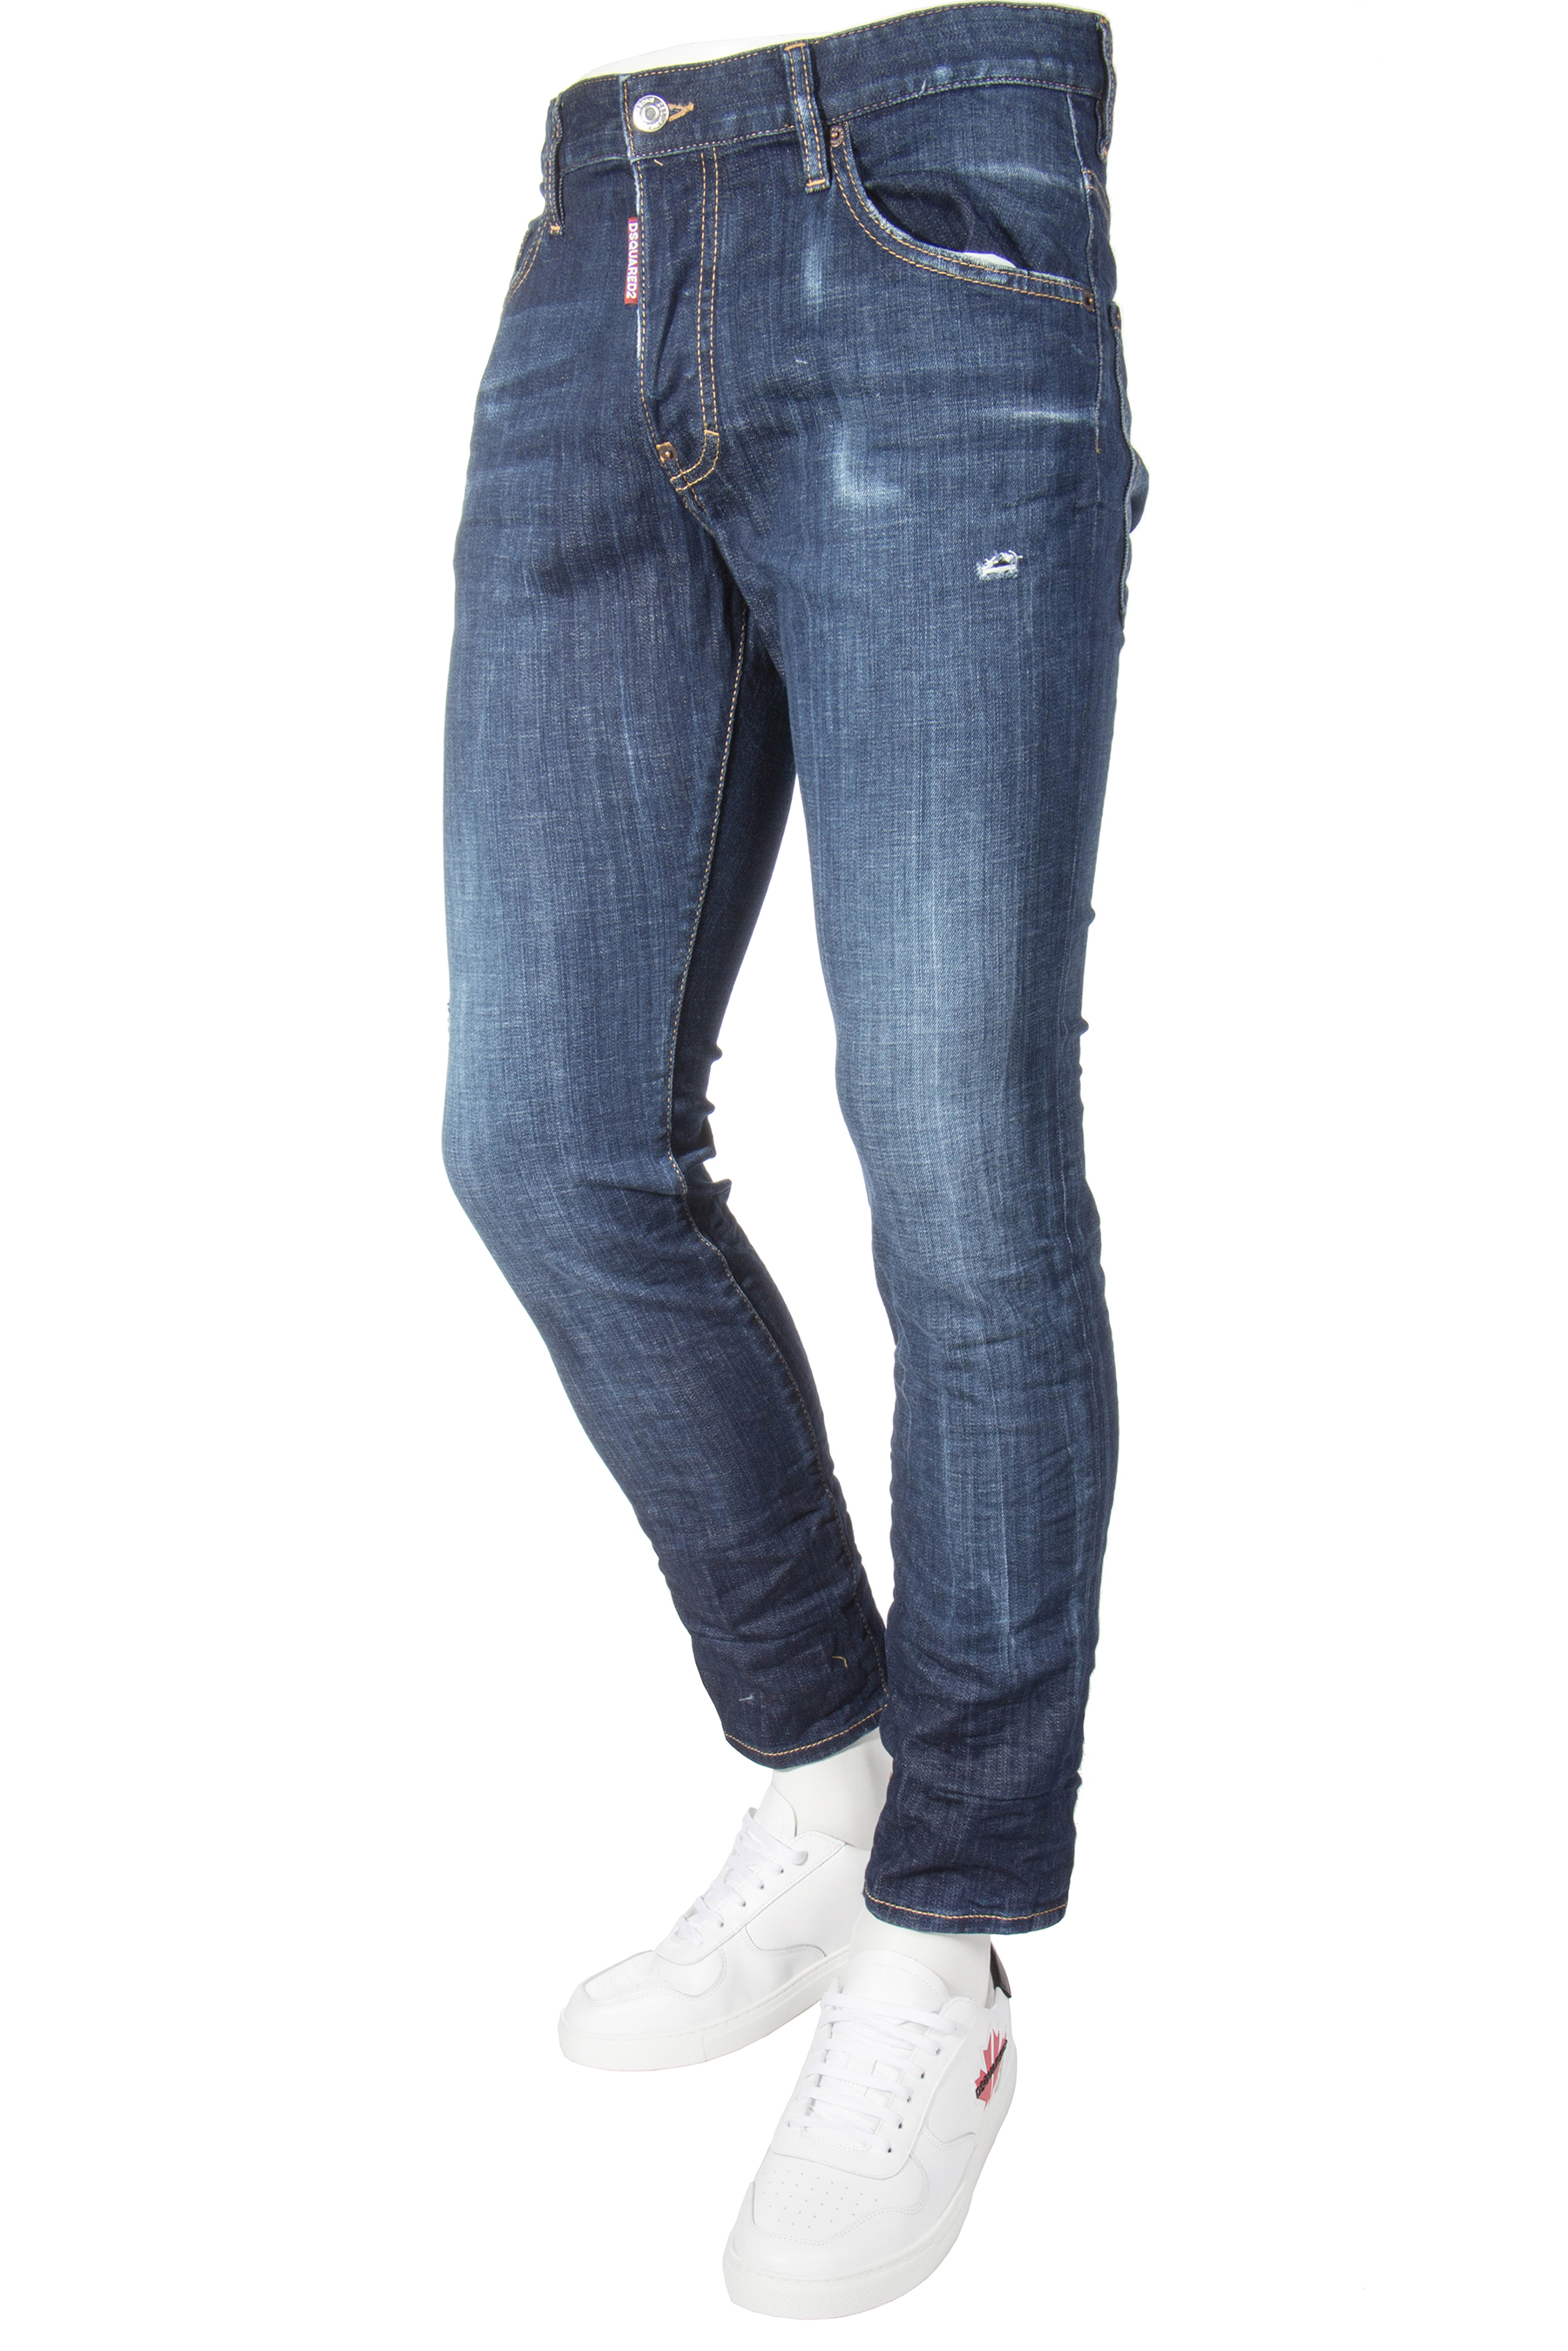 DSQUARED2 Jeans Skater Dark Deep Blue Wash | Jeans | Clothing | Men